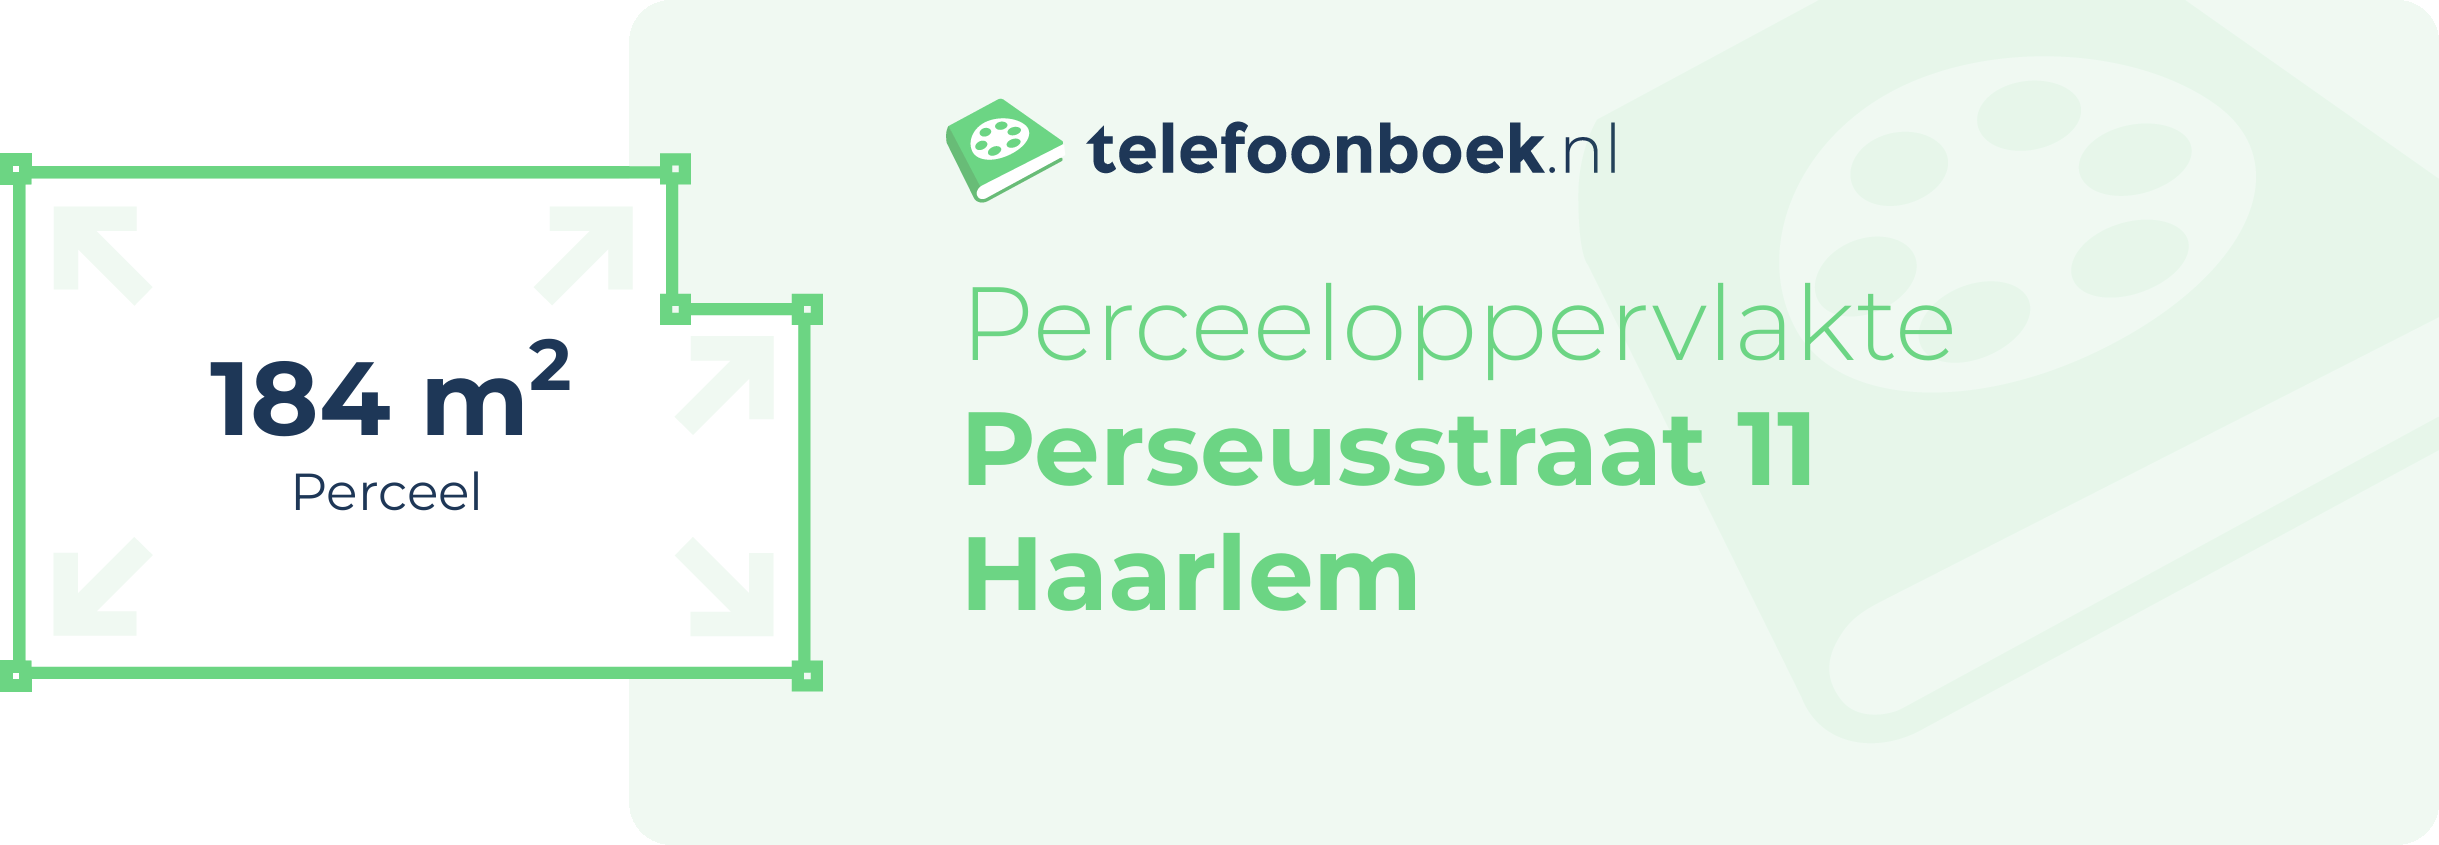 Perceeloppervlakte Perseusstraat 11 Haarlem